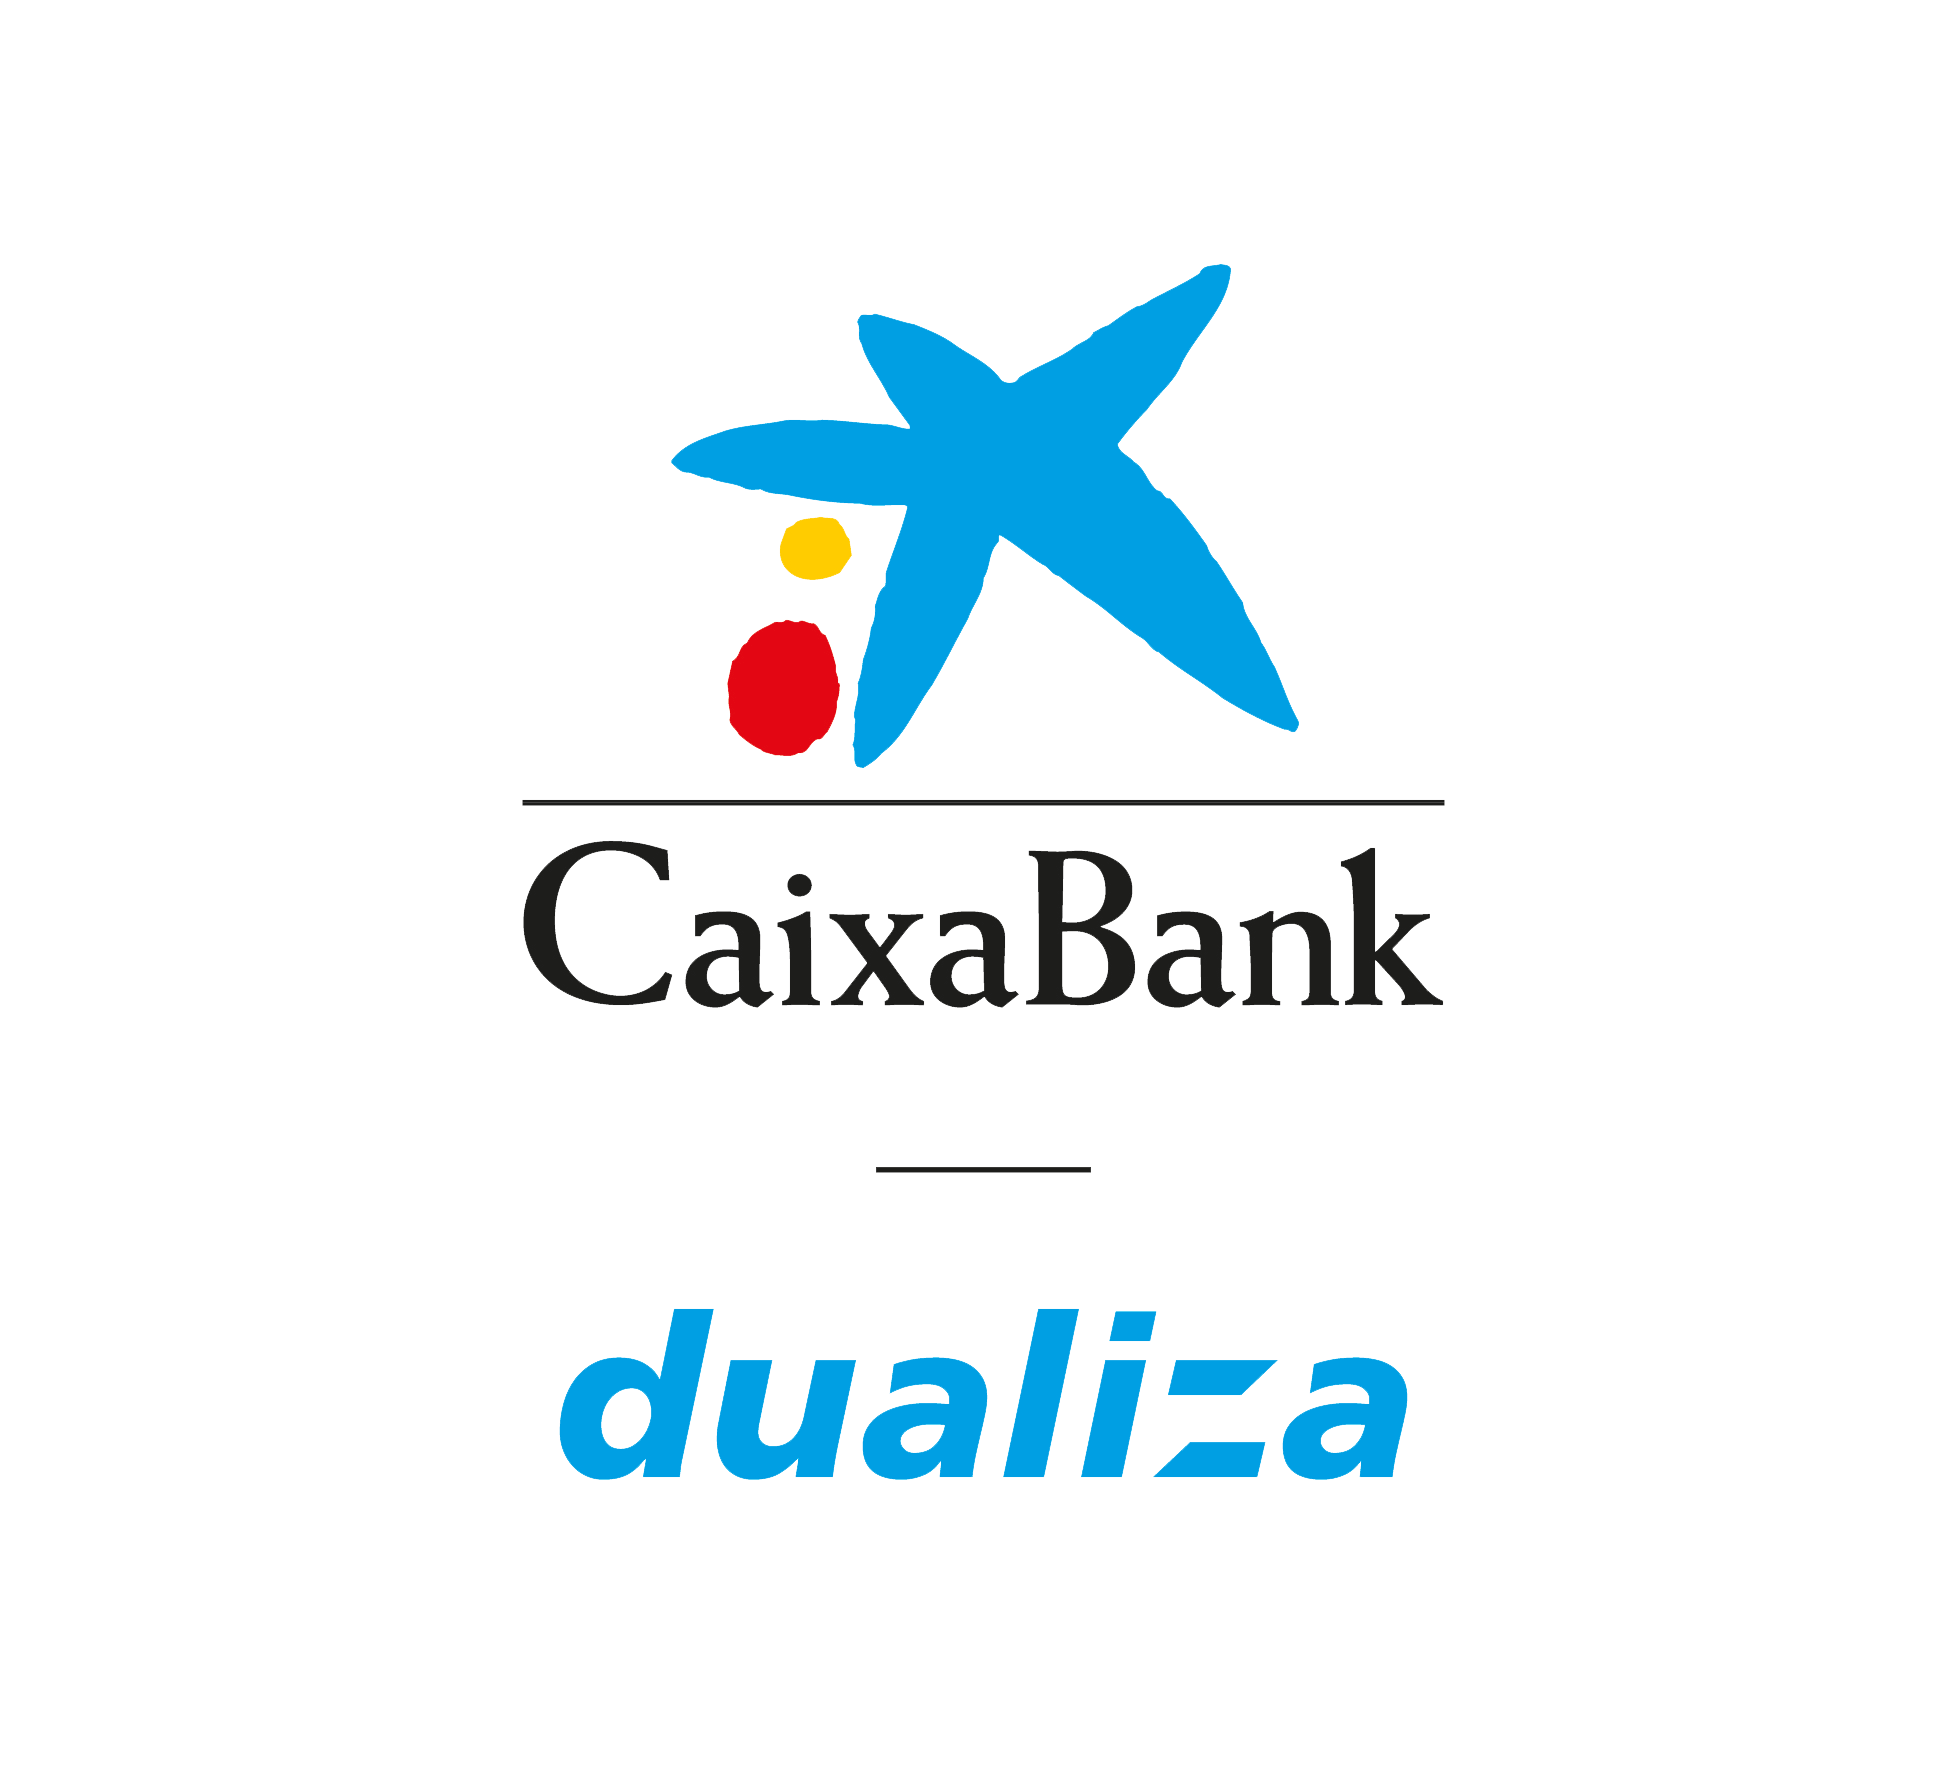 Caixabank Dualiza